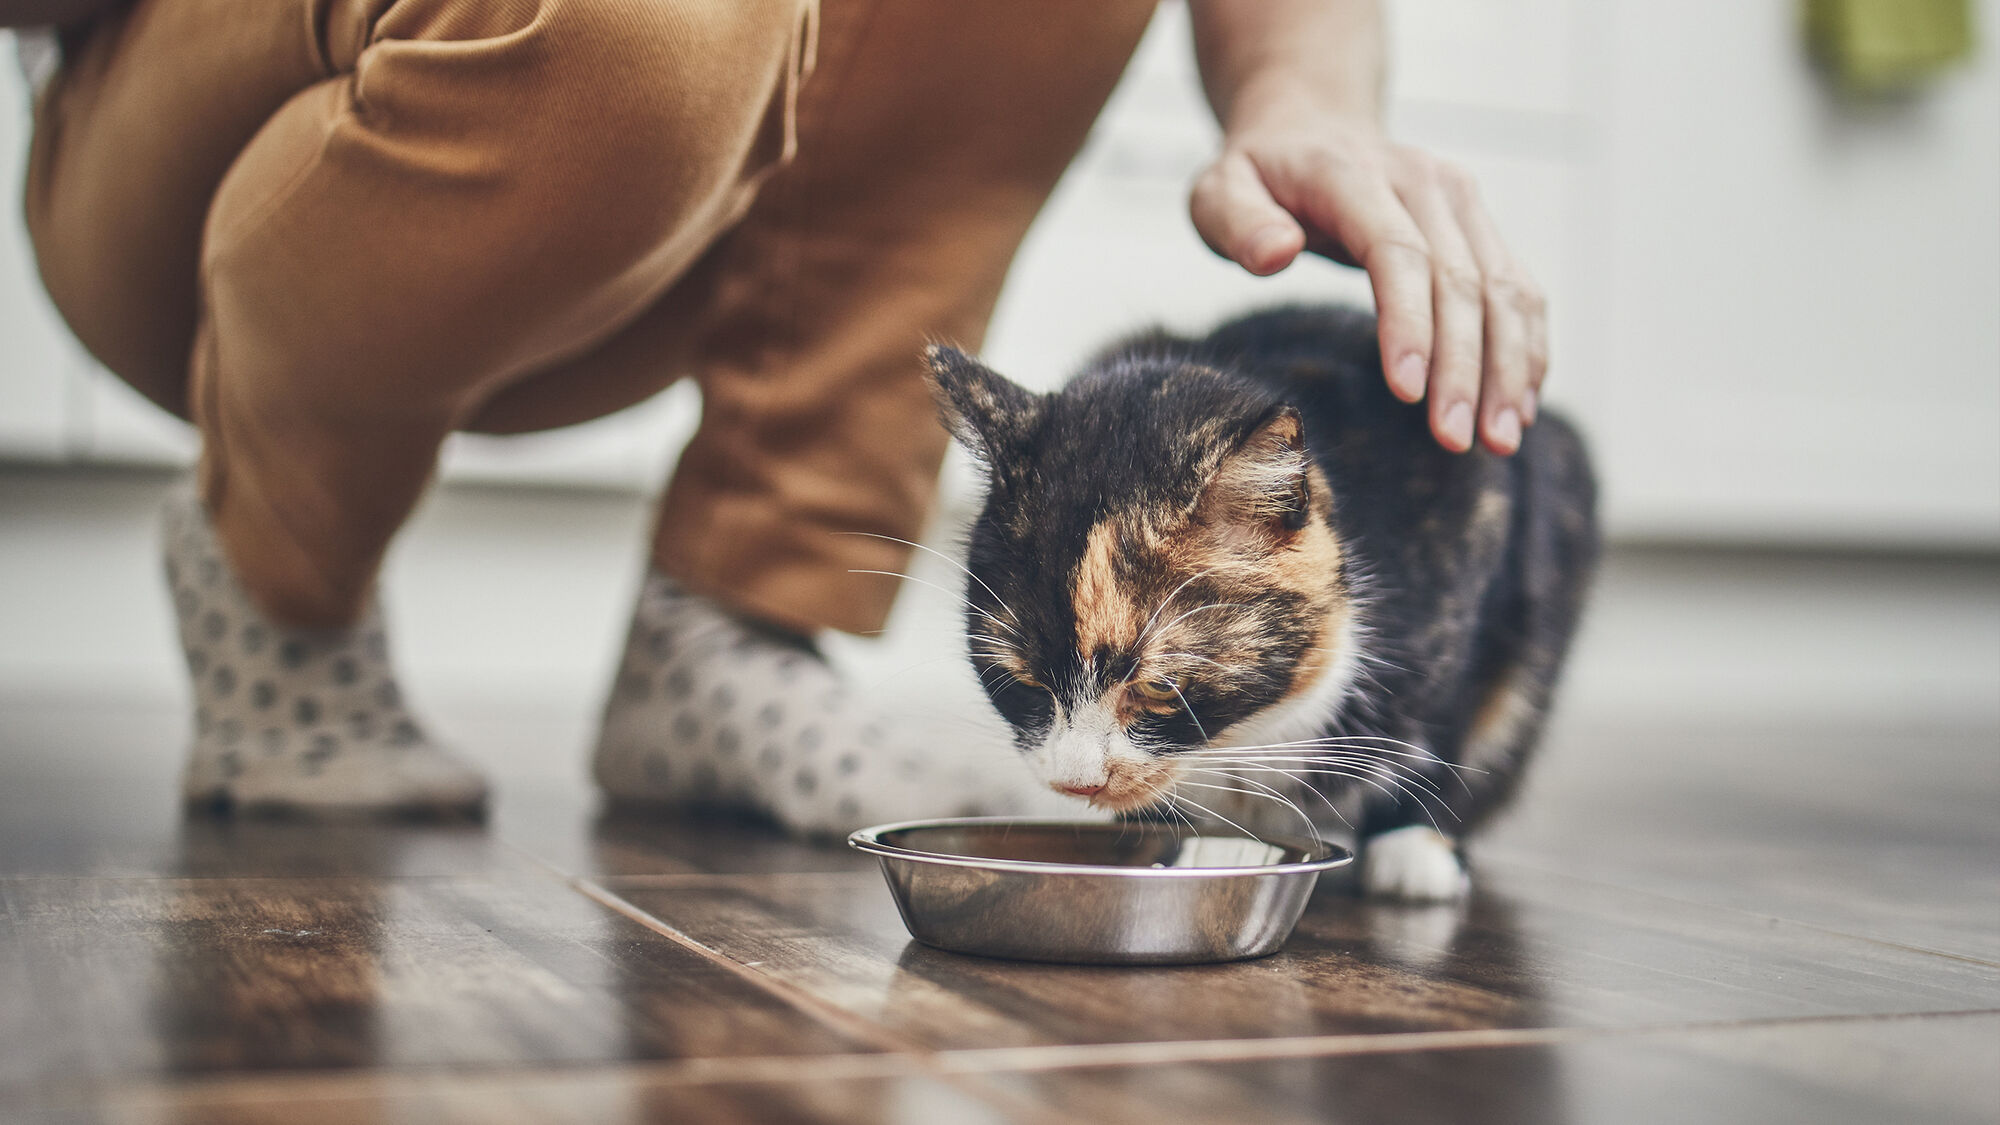 Afbeelding van een kat die uit een roestvrijstalen kom eet terwijl hij wordt geaaid door zijn eigenaar